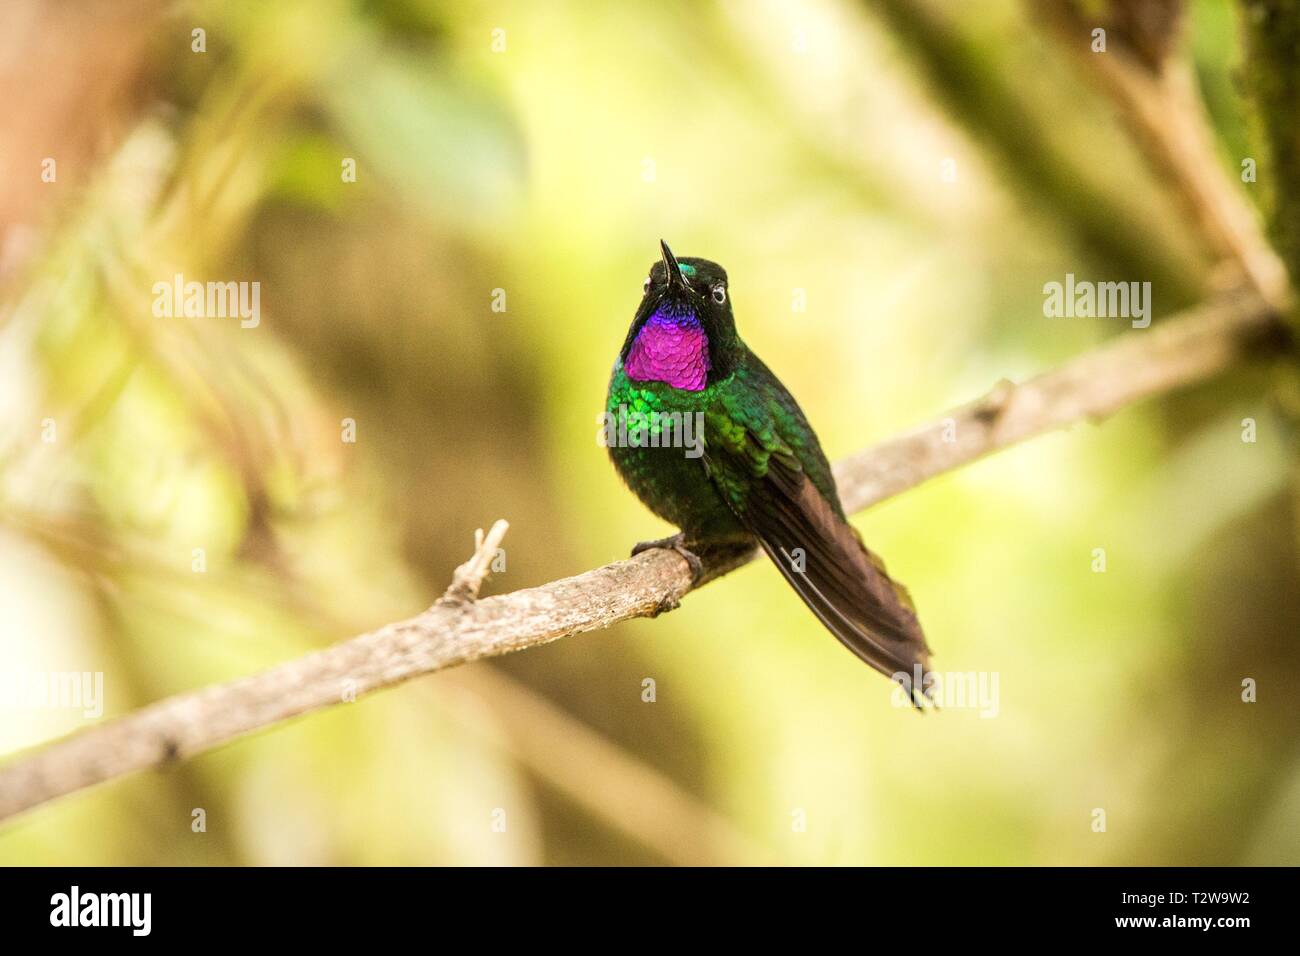 Sunagel Direction générale de tourmaline, hummingbird des montagnes, de la Colombie, Nevado del Ruiz,bird perching,petit oiseau posé sur arbre en garde Banque D'Images